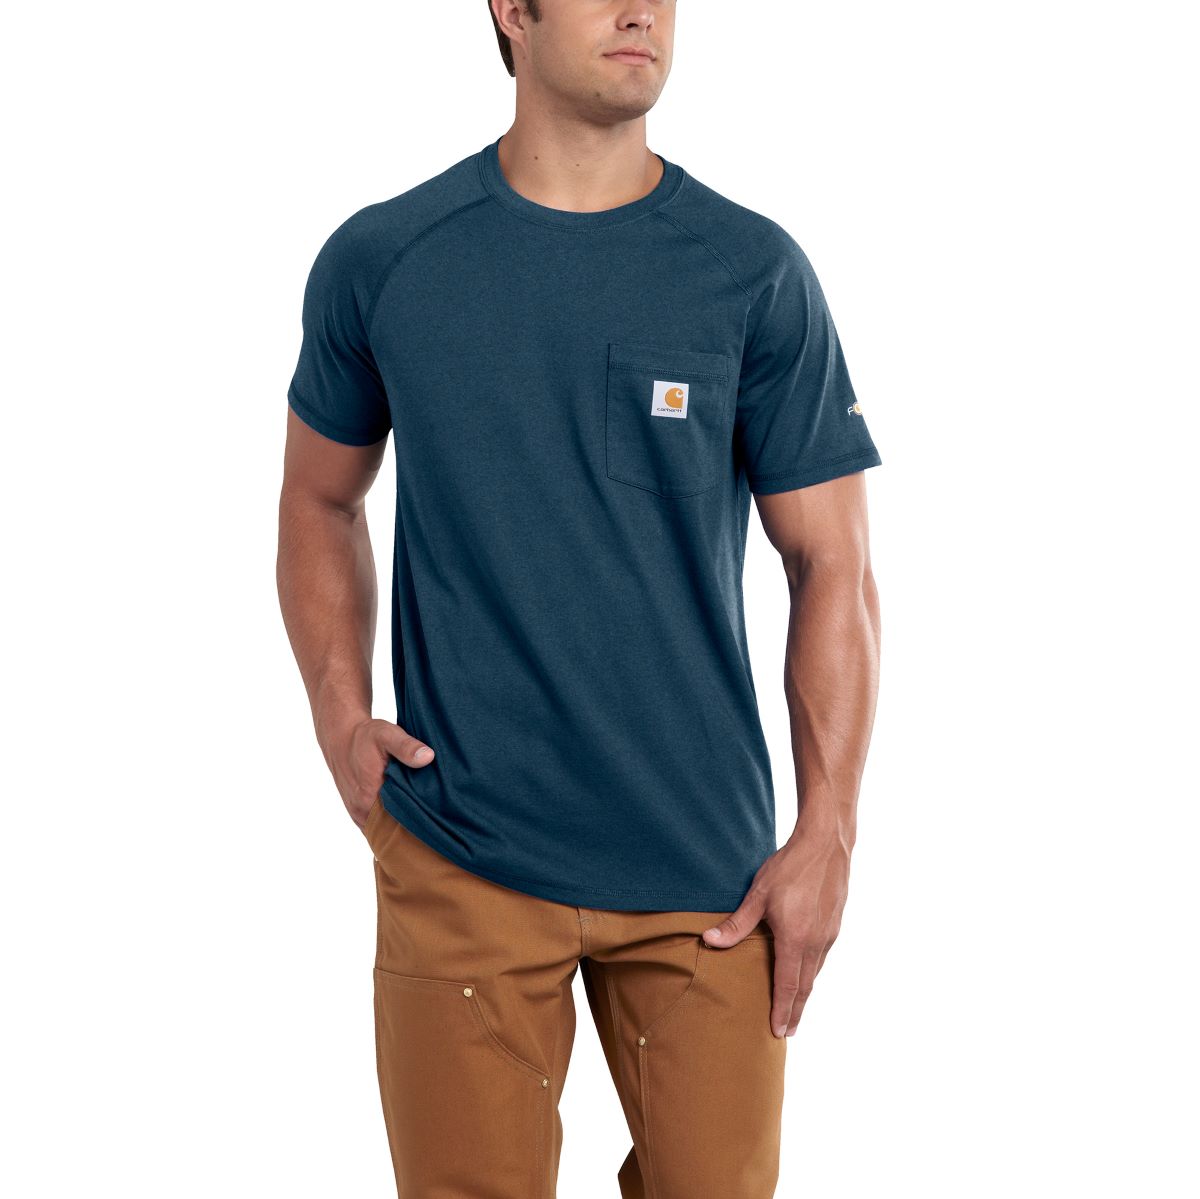 'Carhartt' Men's Midweight Force® Cotton Pocket T-Shirt - Light Huron Heather